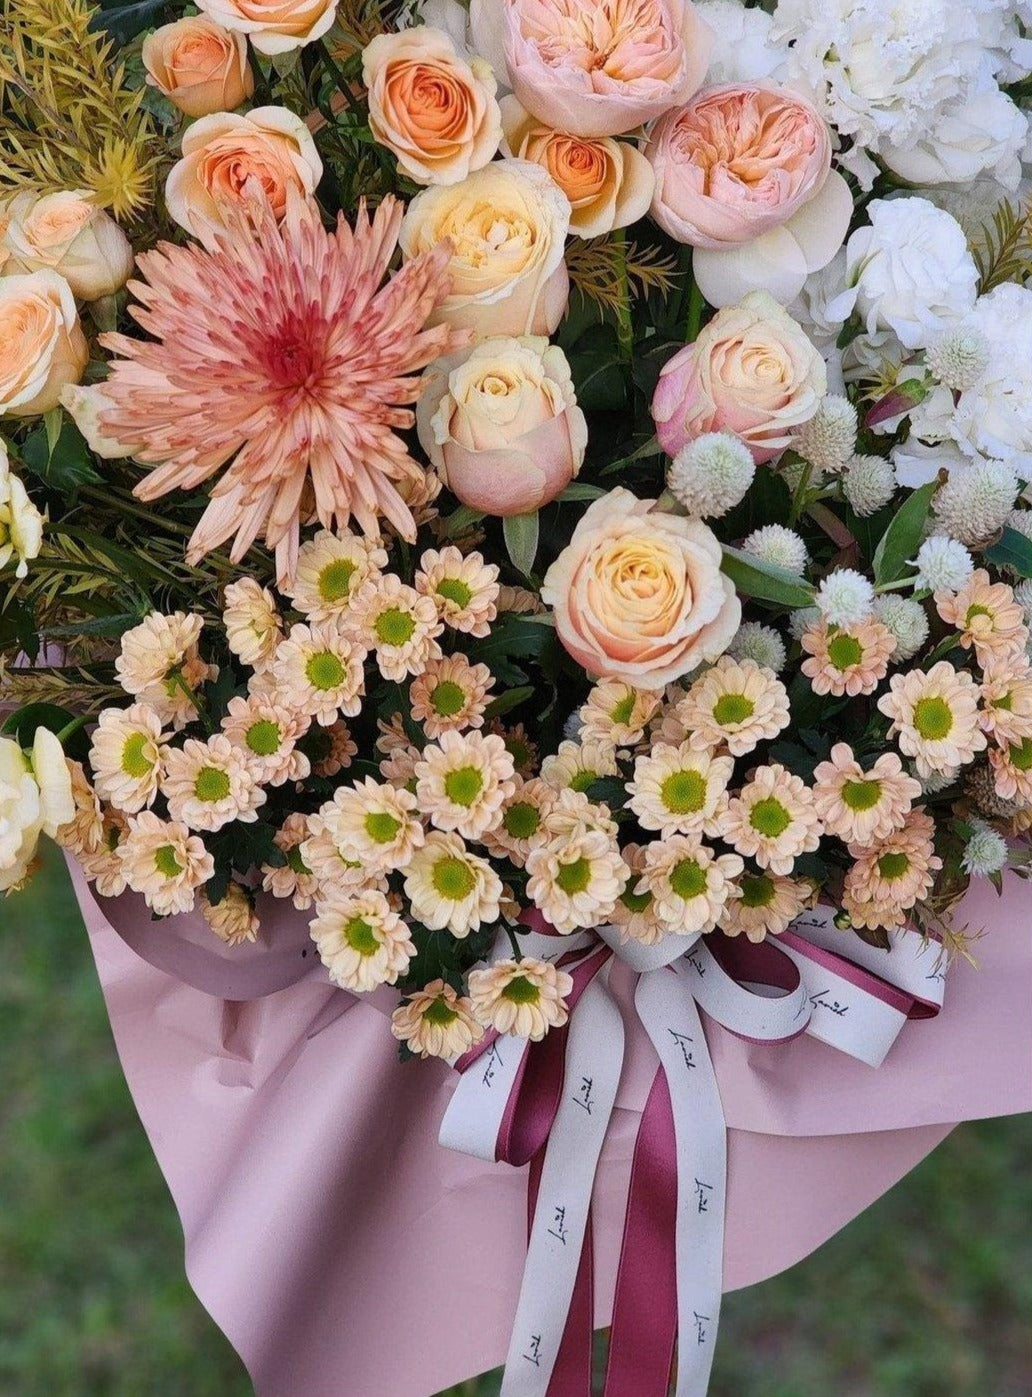 開張送花 開張花籃 香港花店推介 網上花店 即日送花 Lavish Florist 花束 